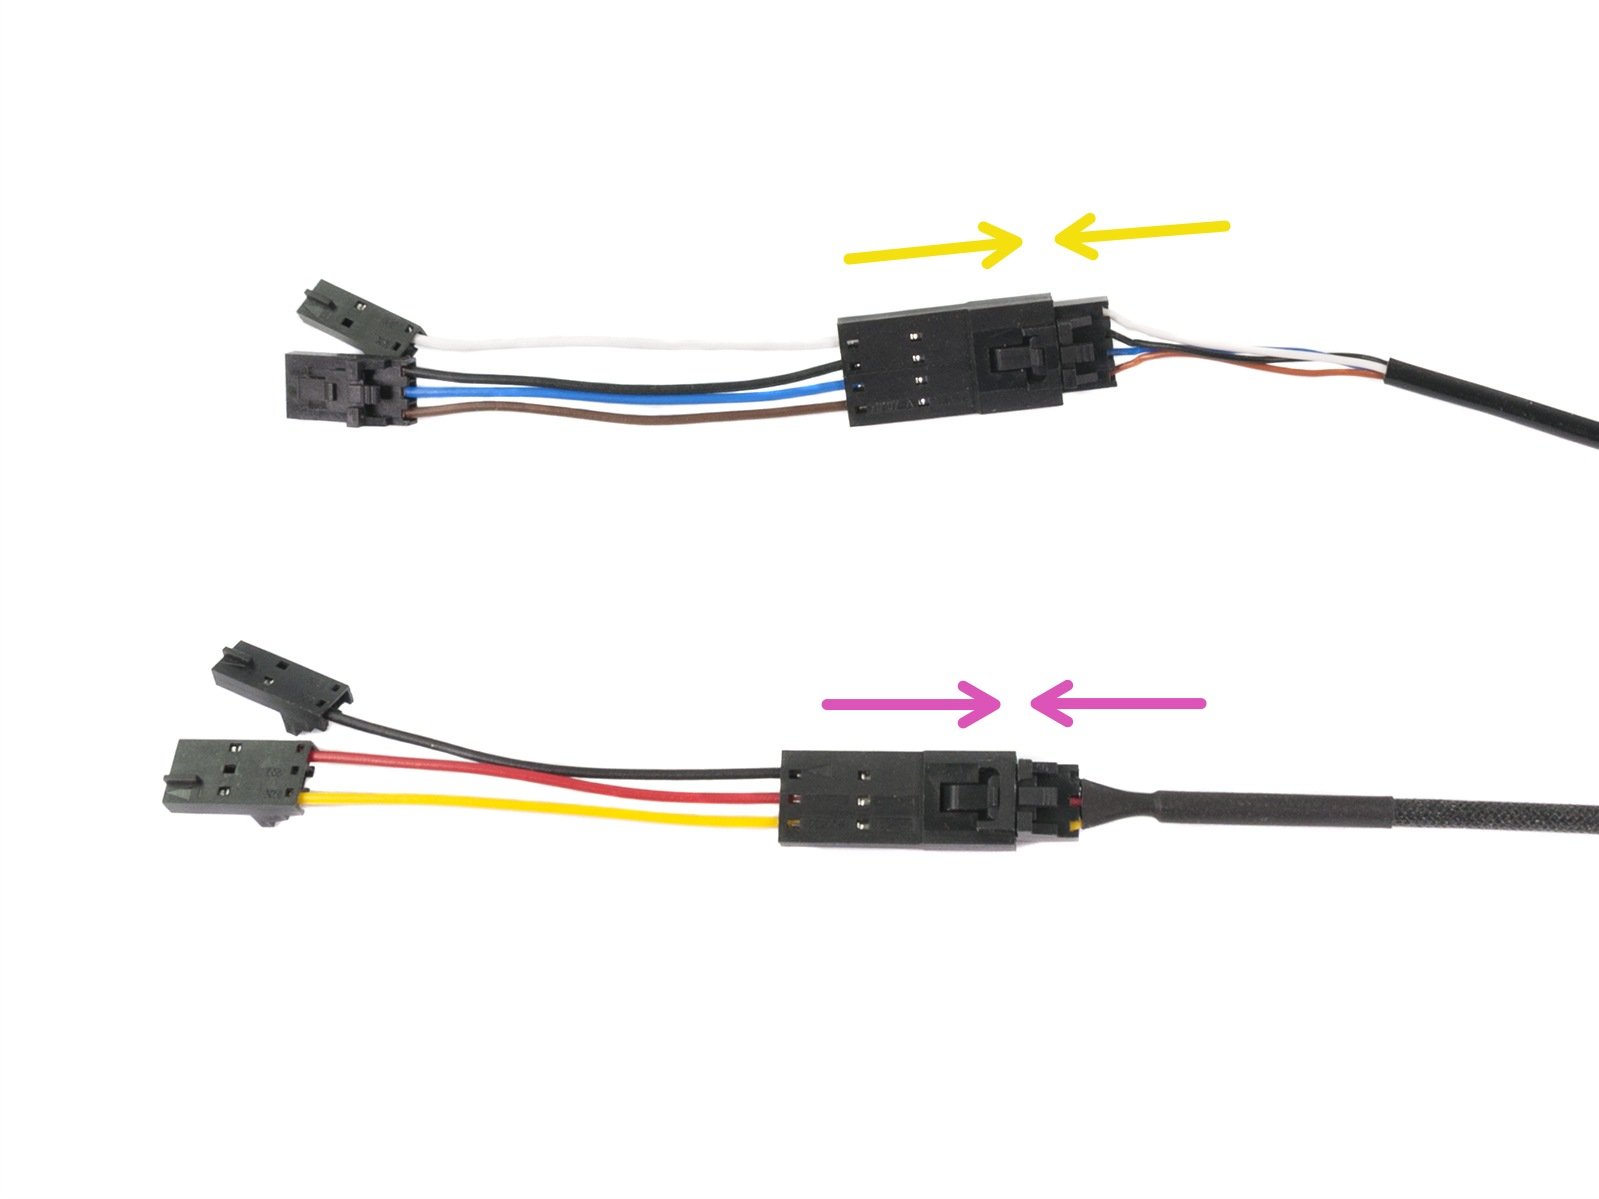 Připojení v-kabelů ke kabelům extruderu.